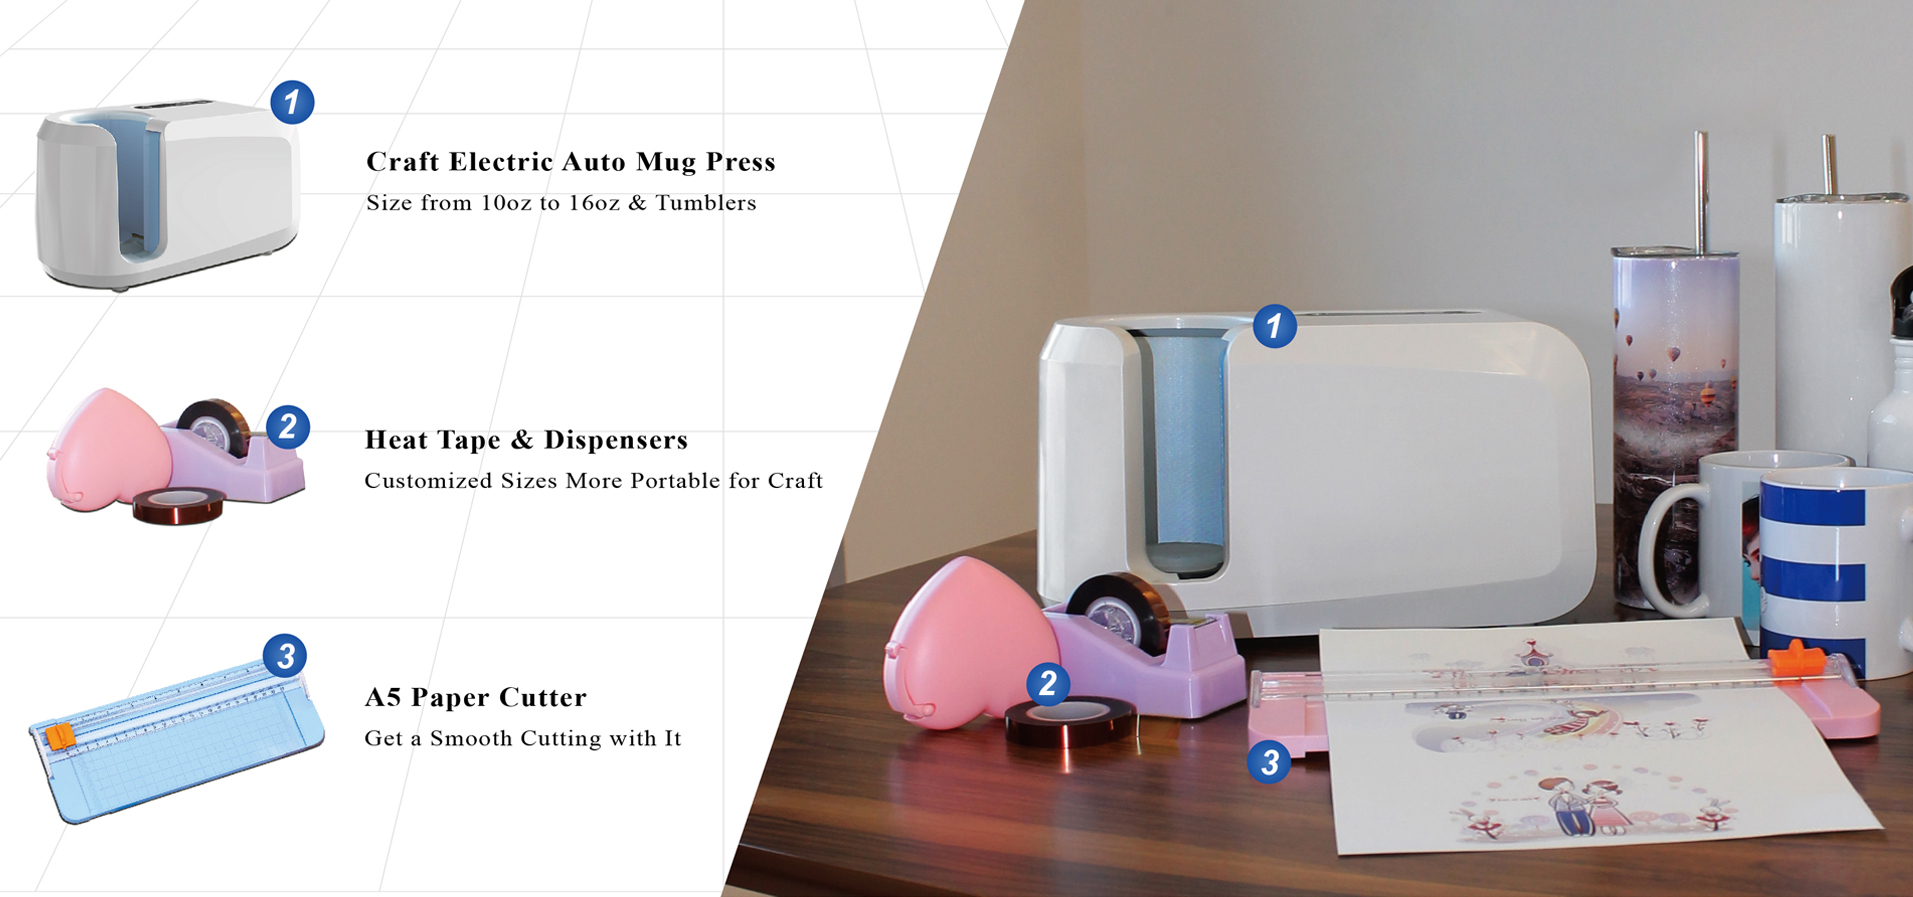 Bora kuliko Cricut Mug Press!  Otomatiki Craft One Touch Mug Press